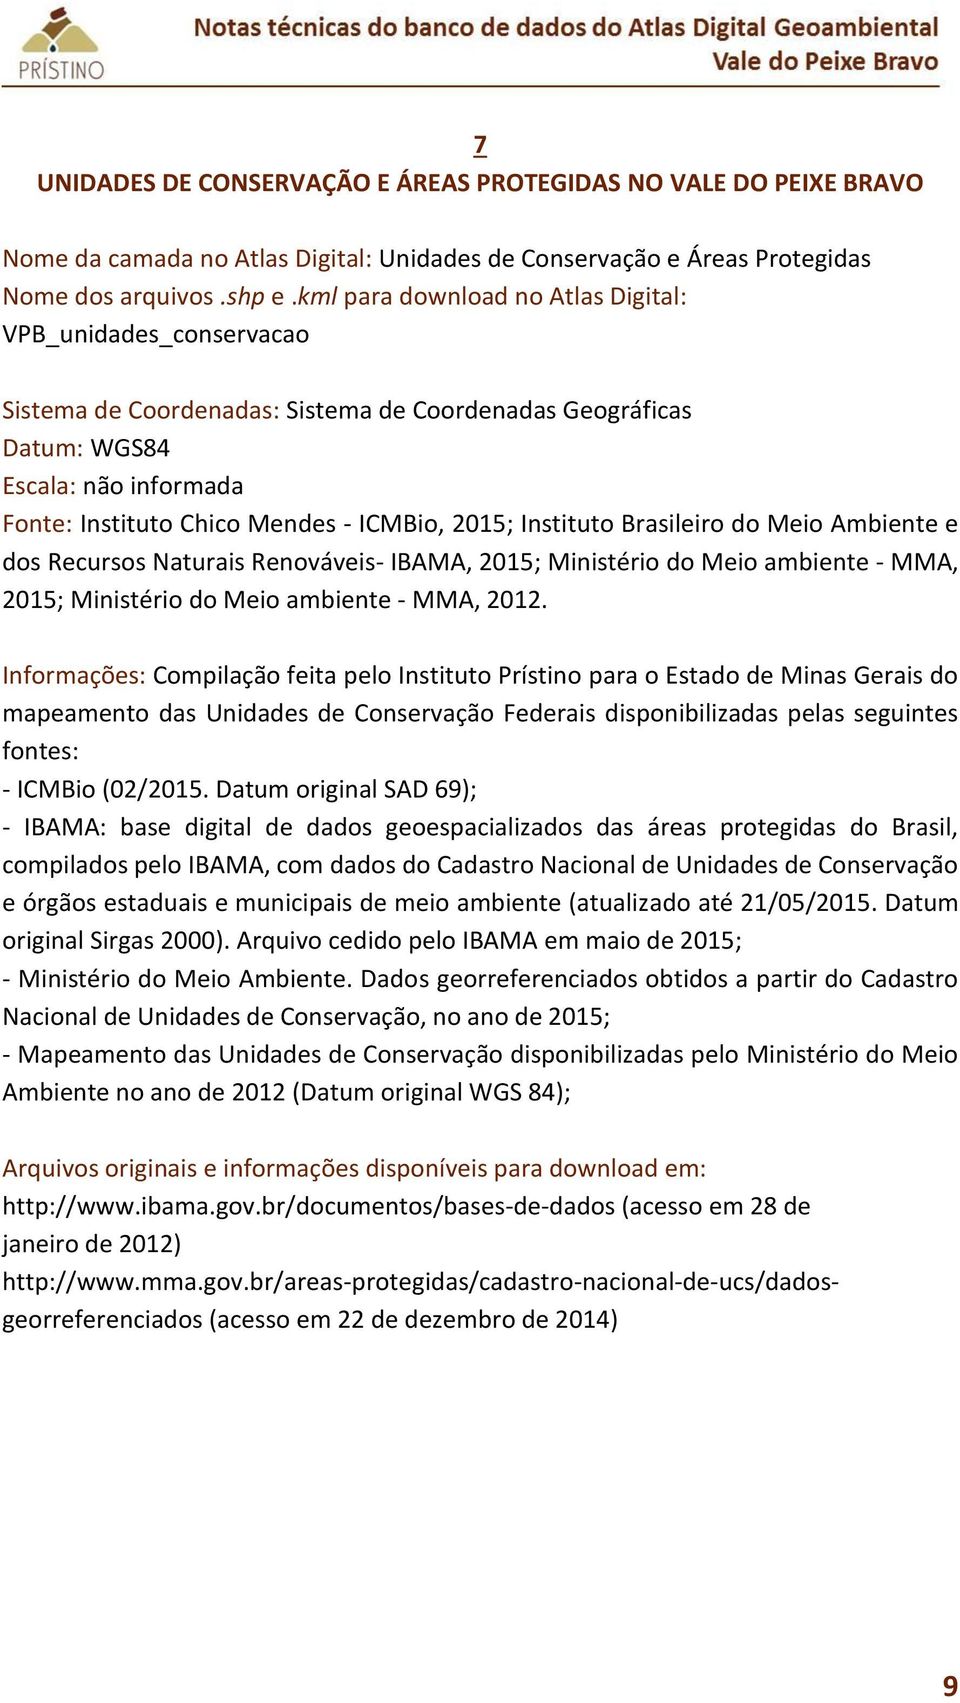 Renováveis- IBAMA, 2015; Ministério do Meio ambiente - MMA, 2015; Ministério do Meio ambiente - MMA, 2012.